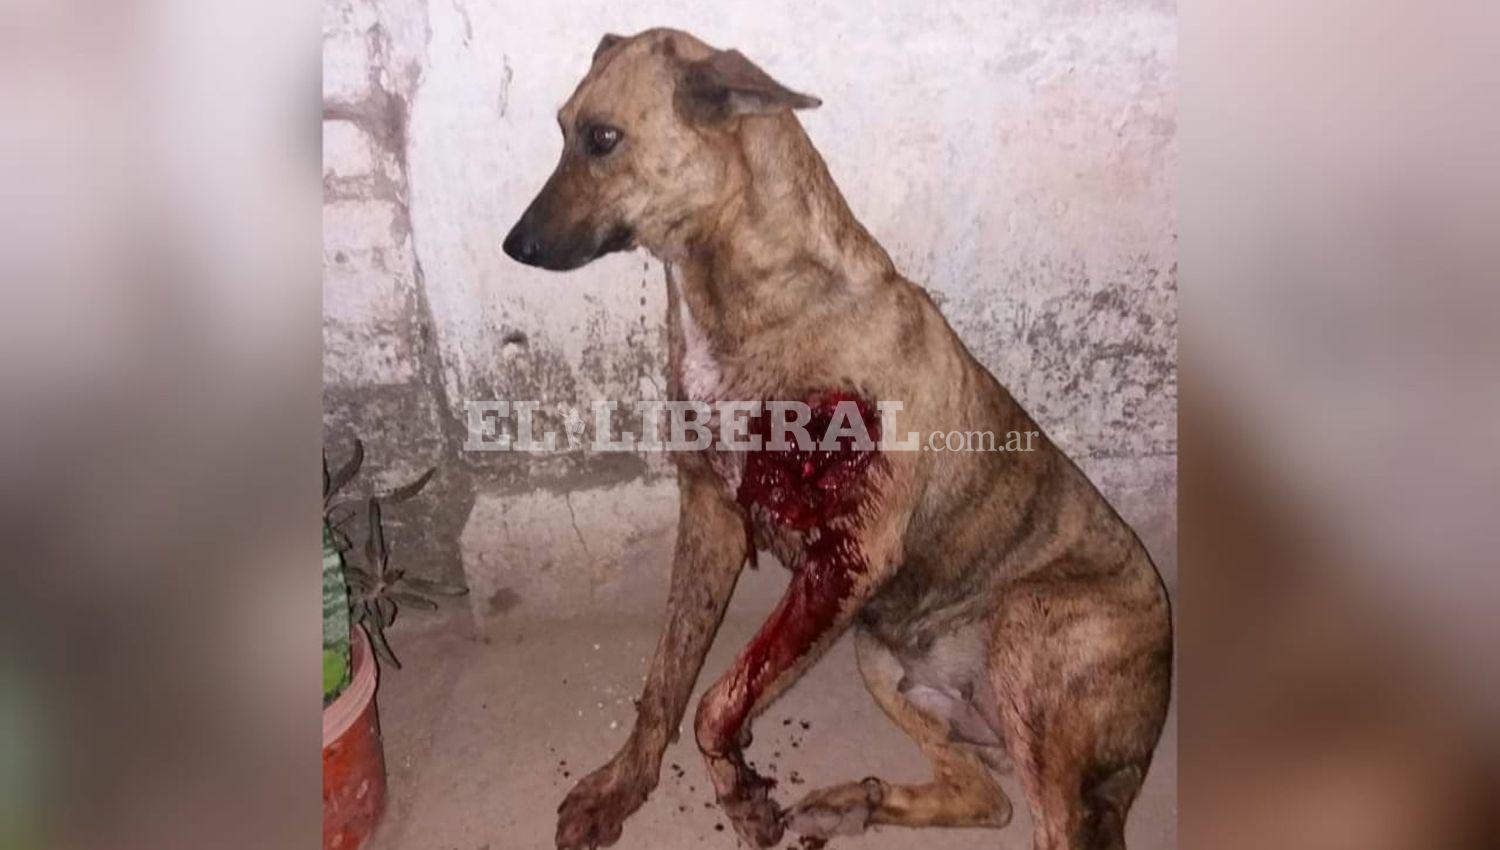 Indignacioacuten en Loreto por cruel ataque a un perro que recibioacute un disparo